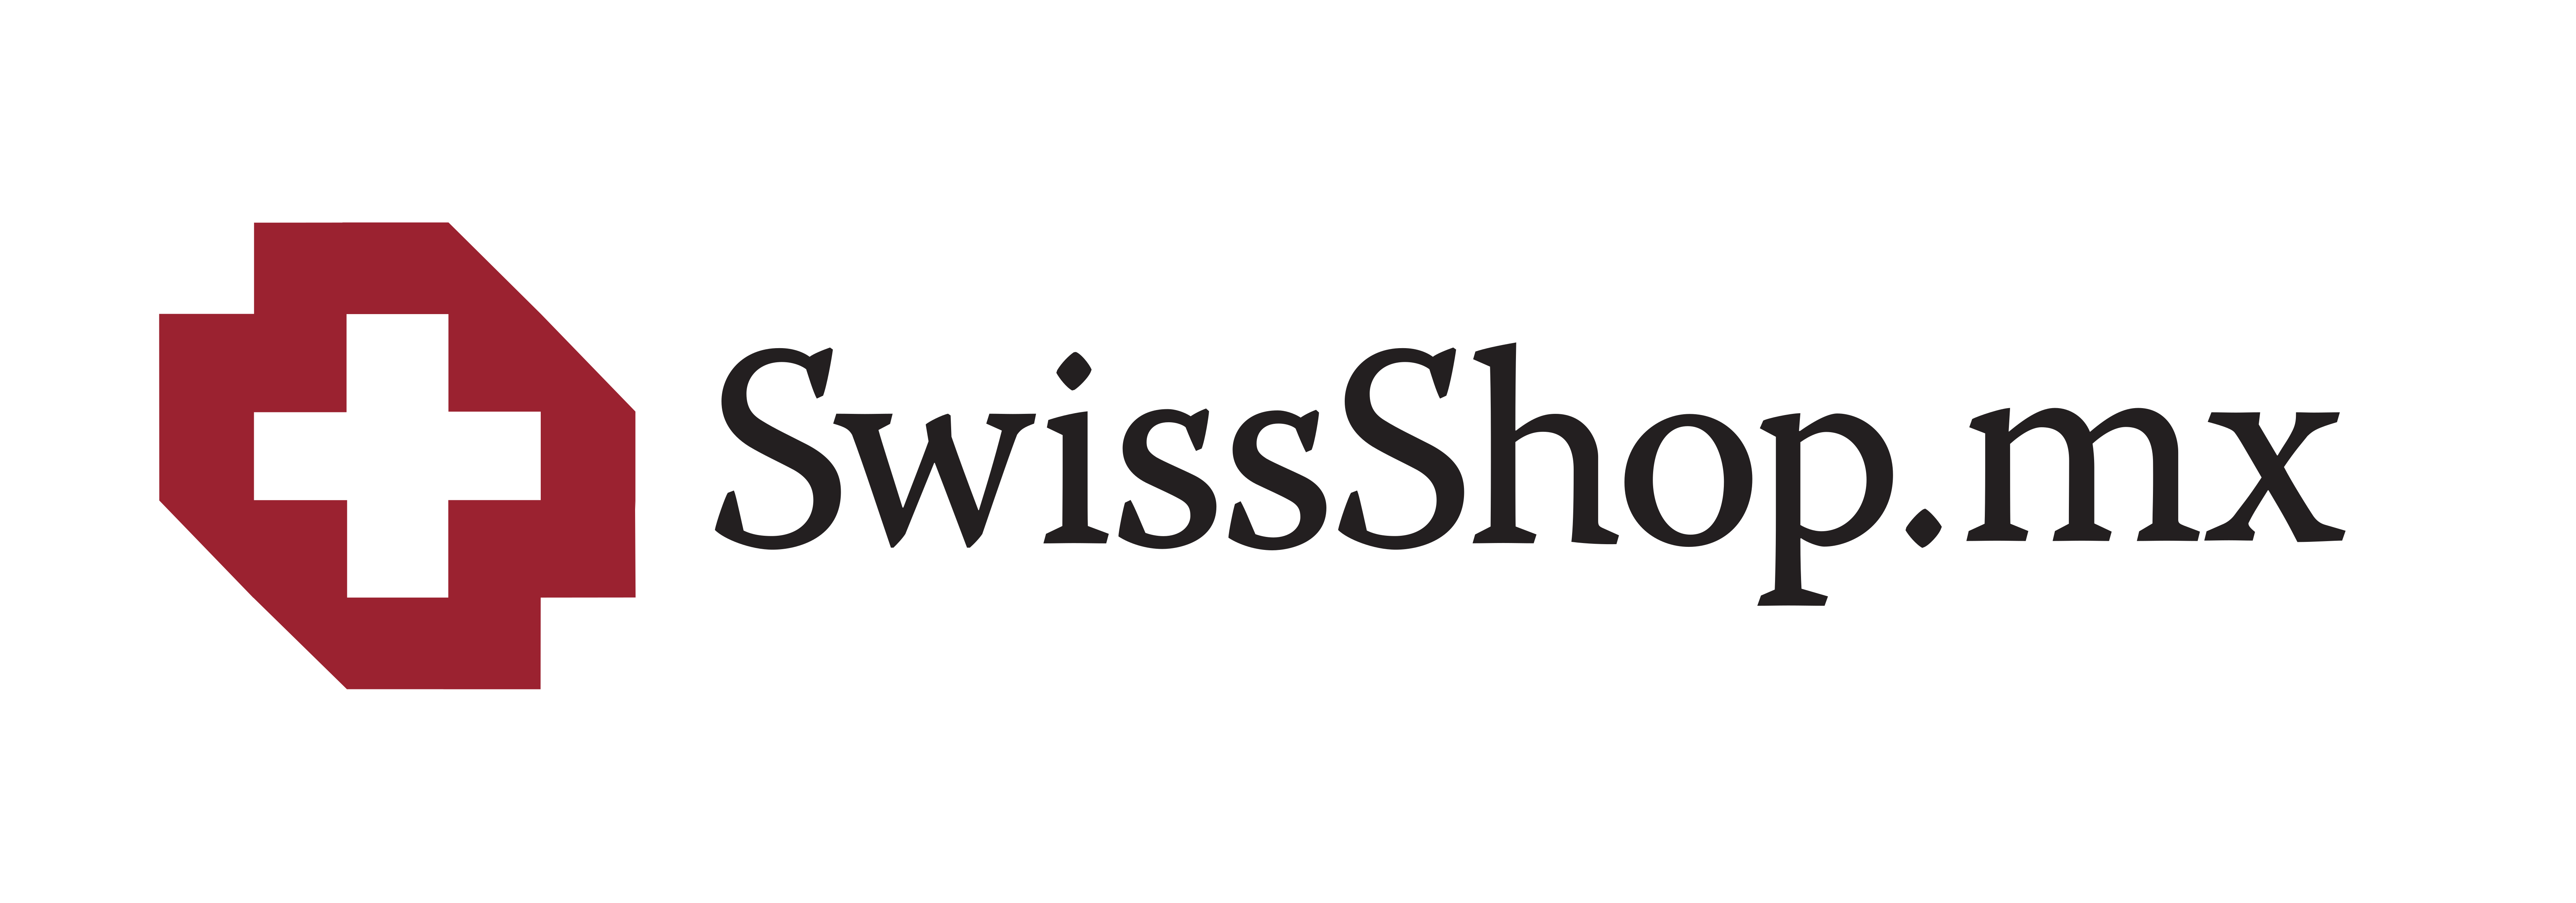 swissshop-mx-logo